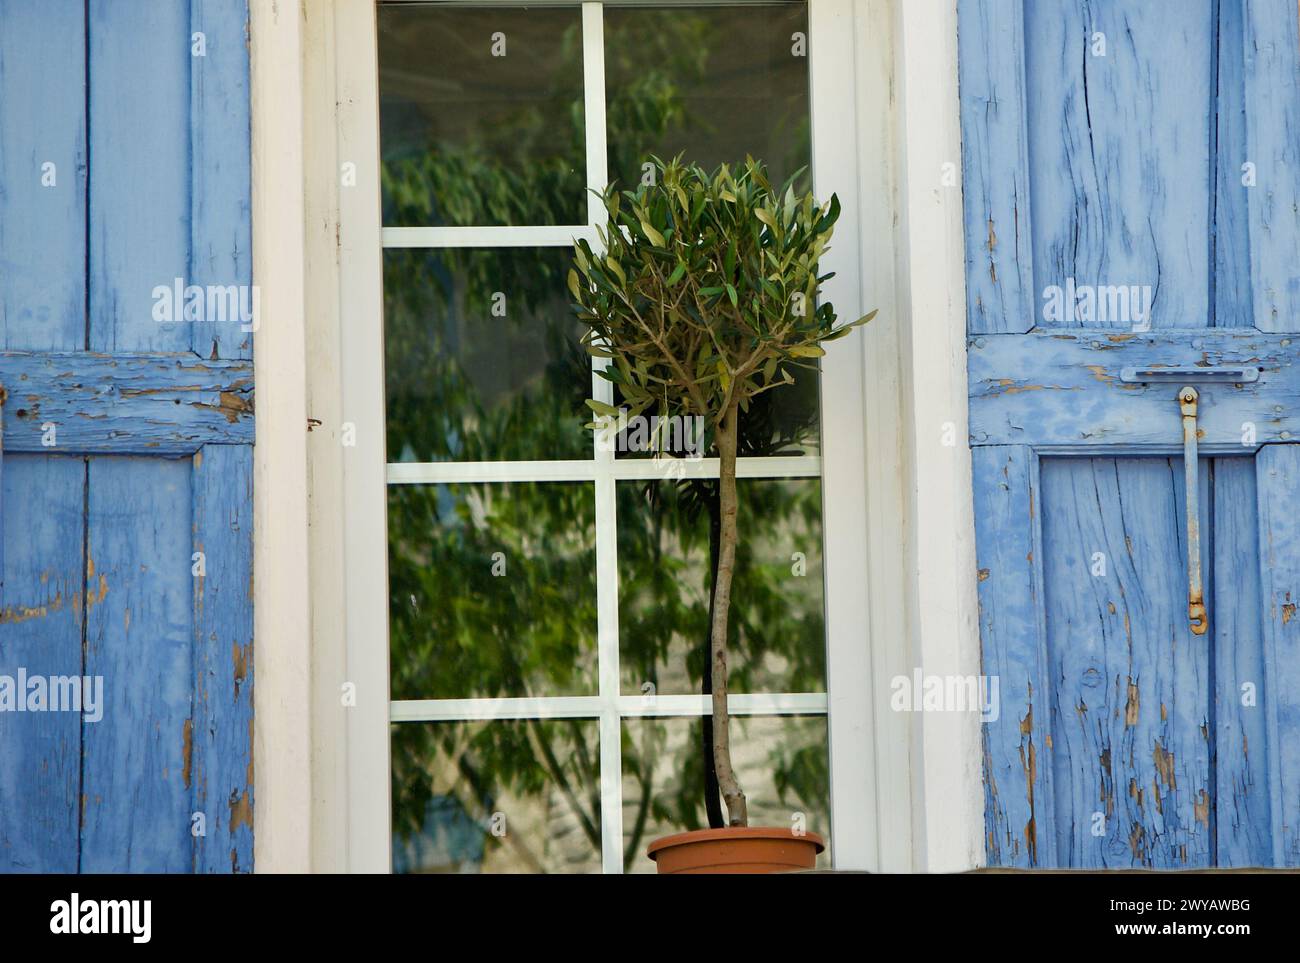 Un piccolo olivo in vaso davanti ad una finestra con persiane blu e riflessi di alberi verdi nei pannelli delle finestre. Foto Stock